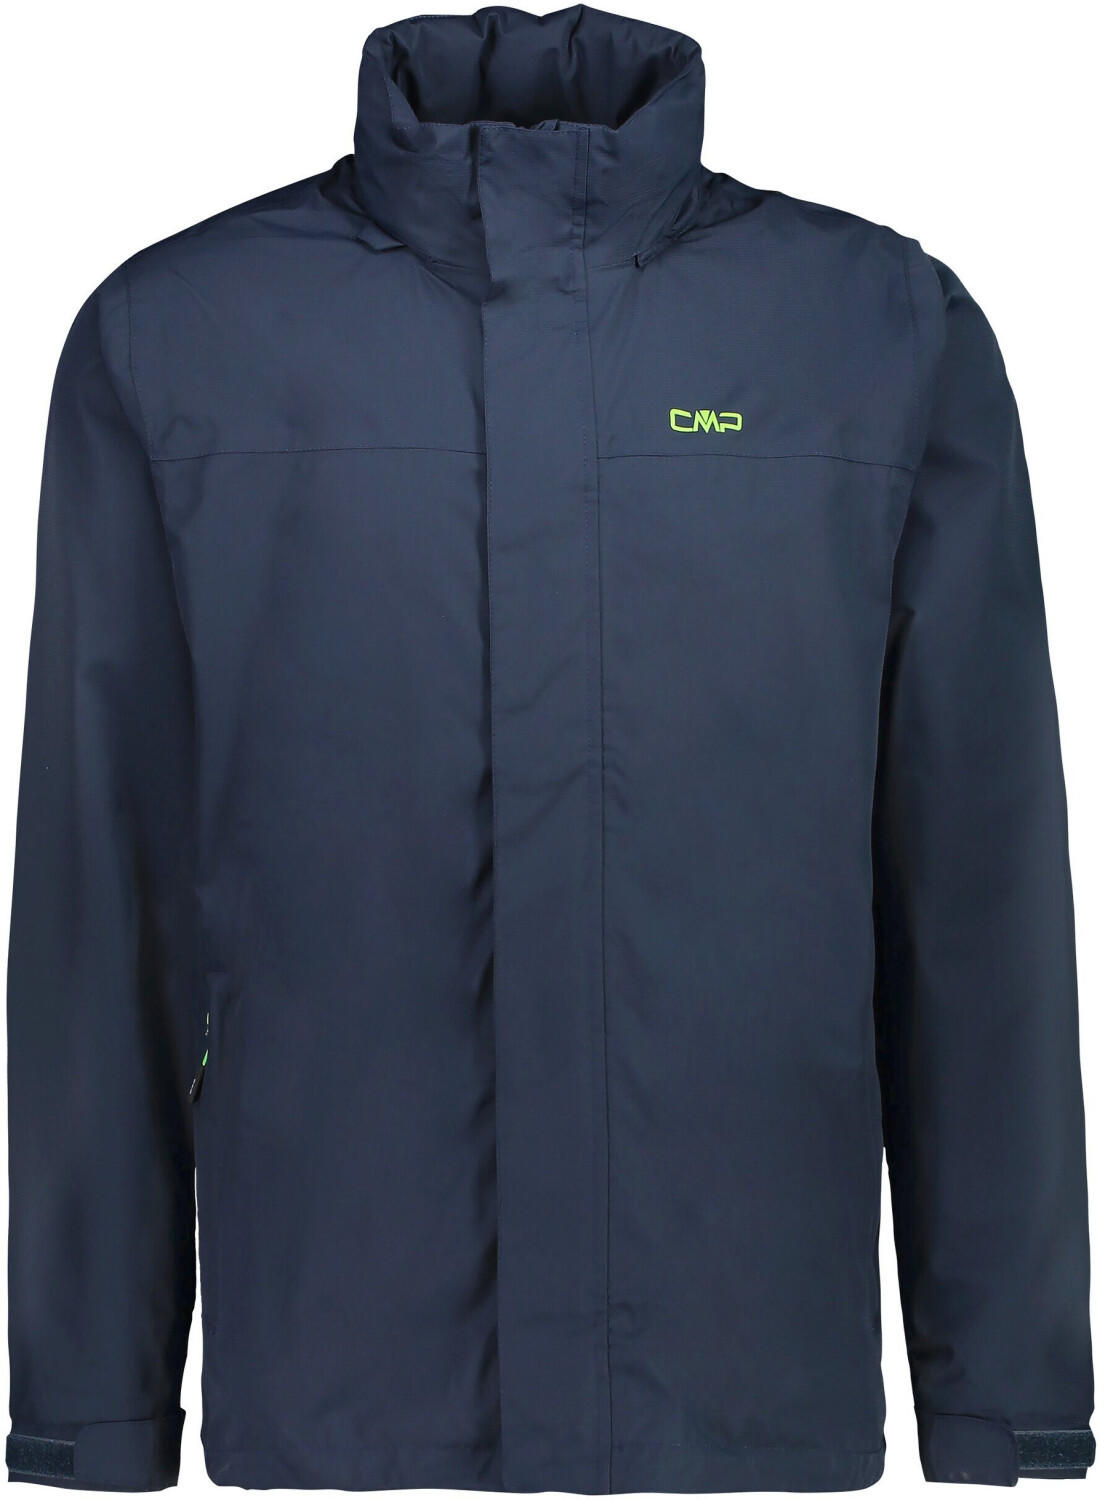 fabric in Angebote € (Oktober ab Test Waterproof TOP 2023) CMP Jacket 51,50 Ripstop black/blue (39X7367)